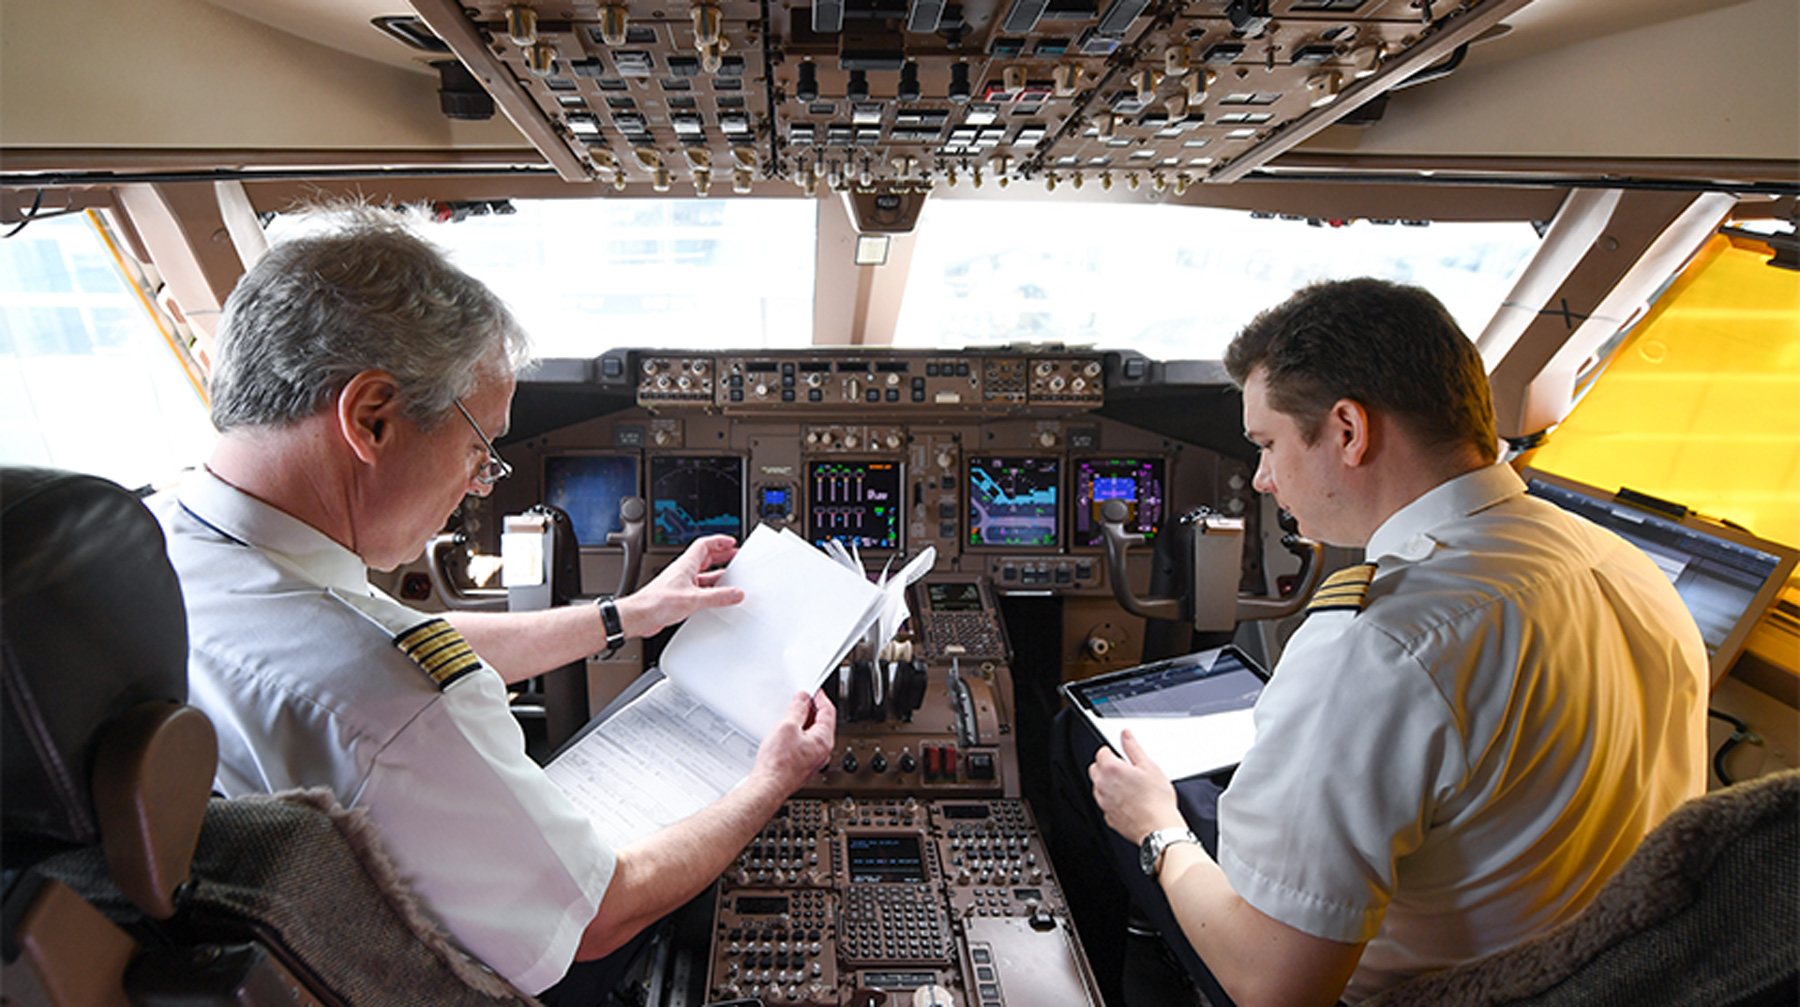 Следователи намерены изучить документы всех проходивших обучение на коммерческих пилотов Фото: © GLOBAL LOOK press/Arne Dedert